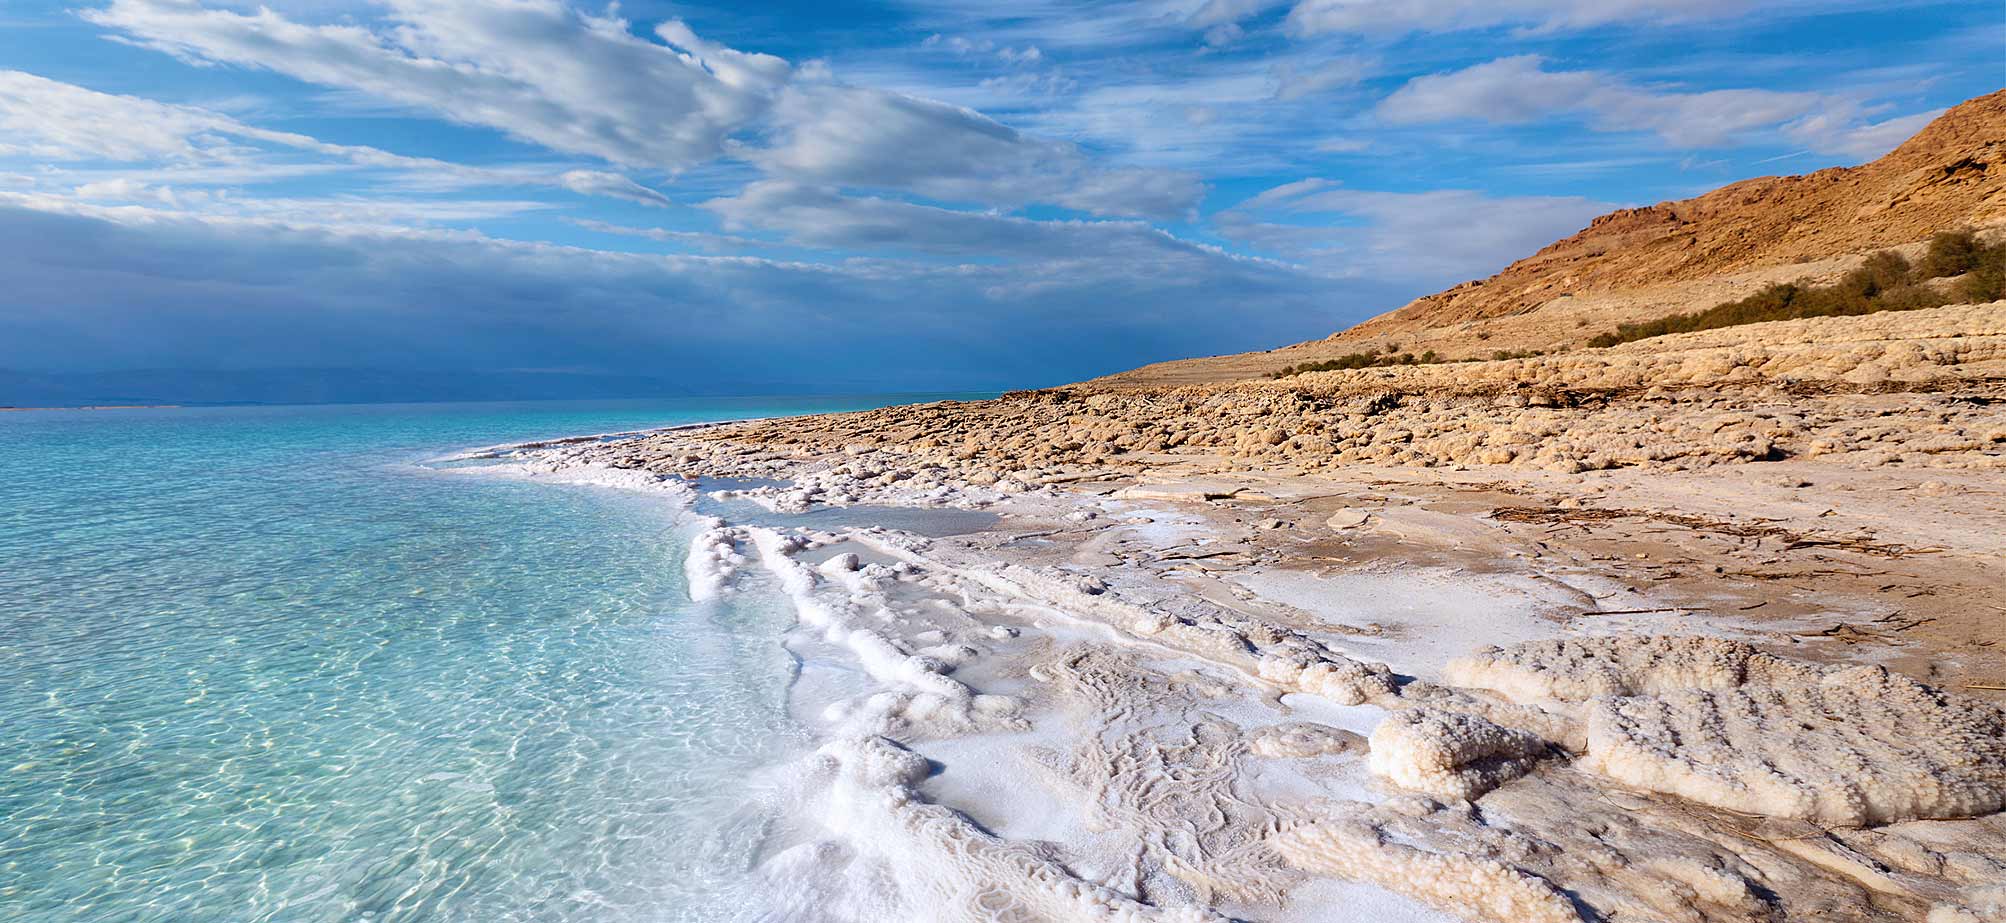 Развлечения на Мертвом море в Иордании 